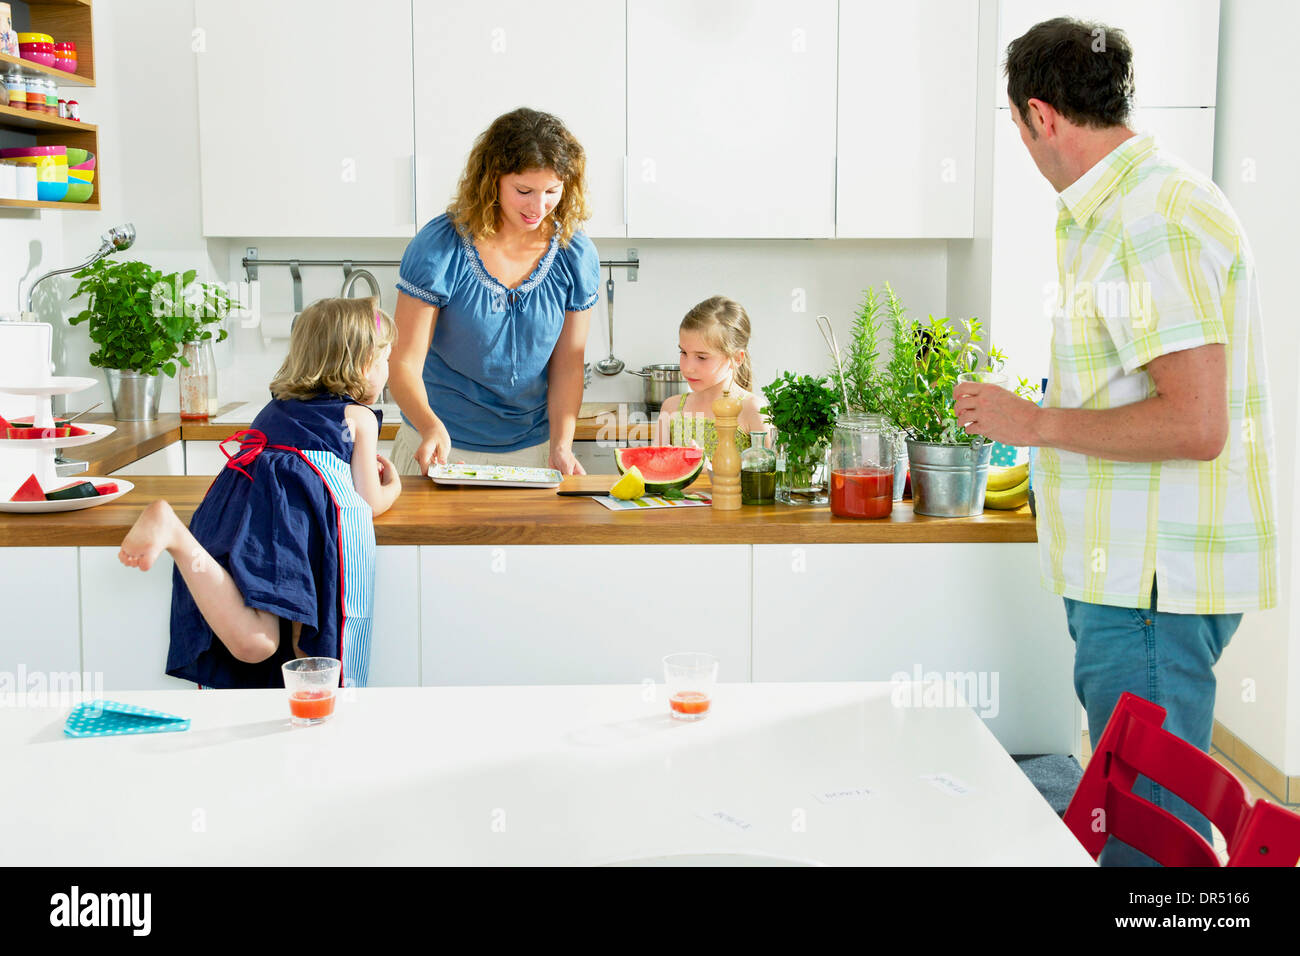 Familie In der Küche Stockfoto